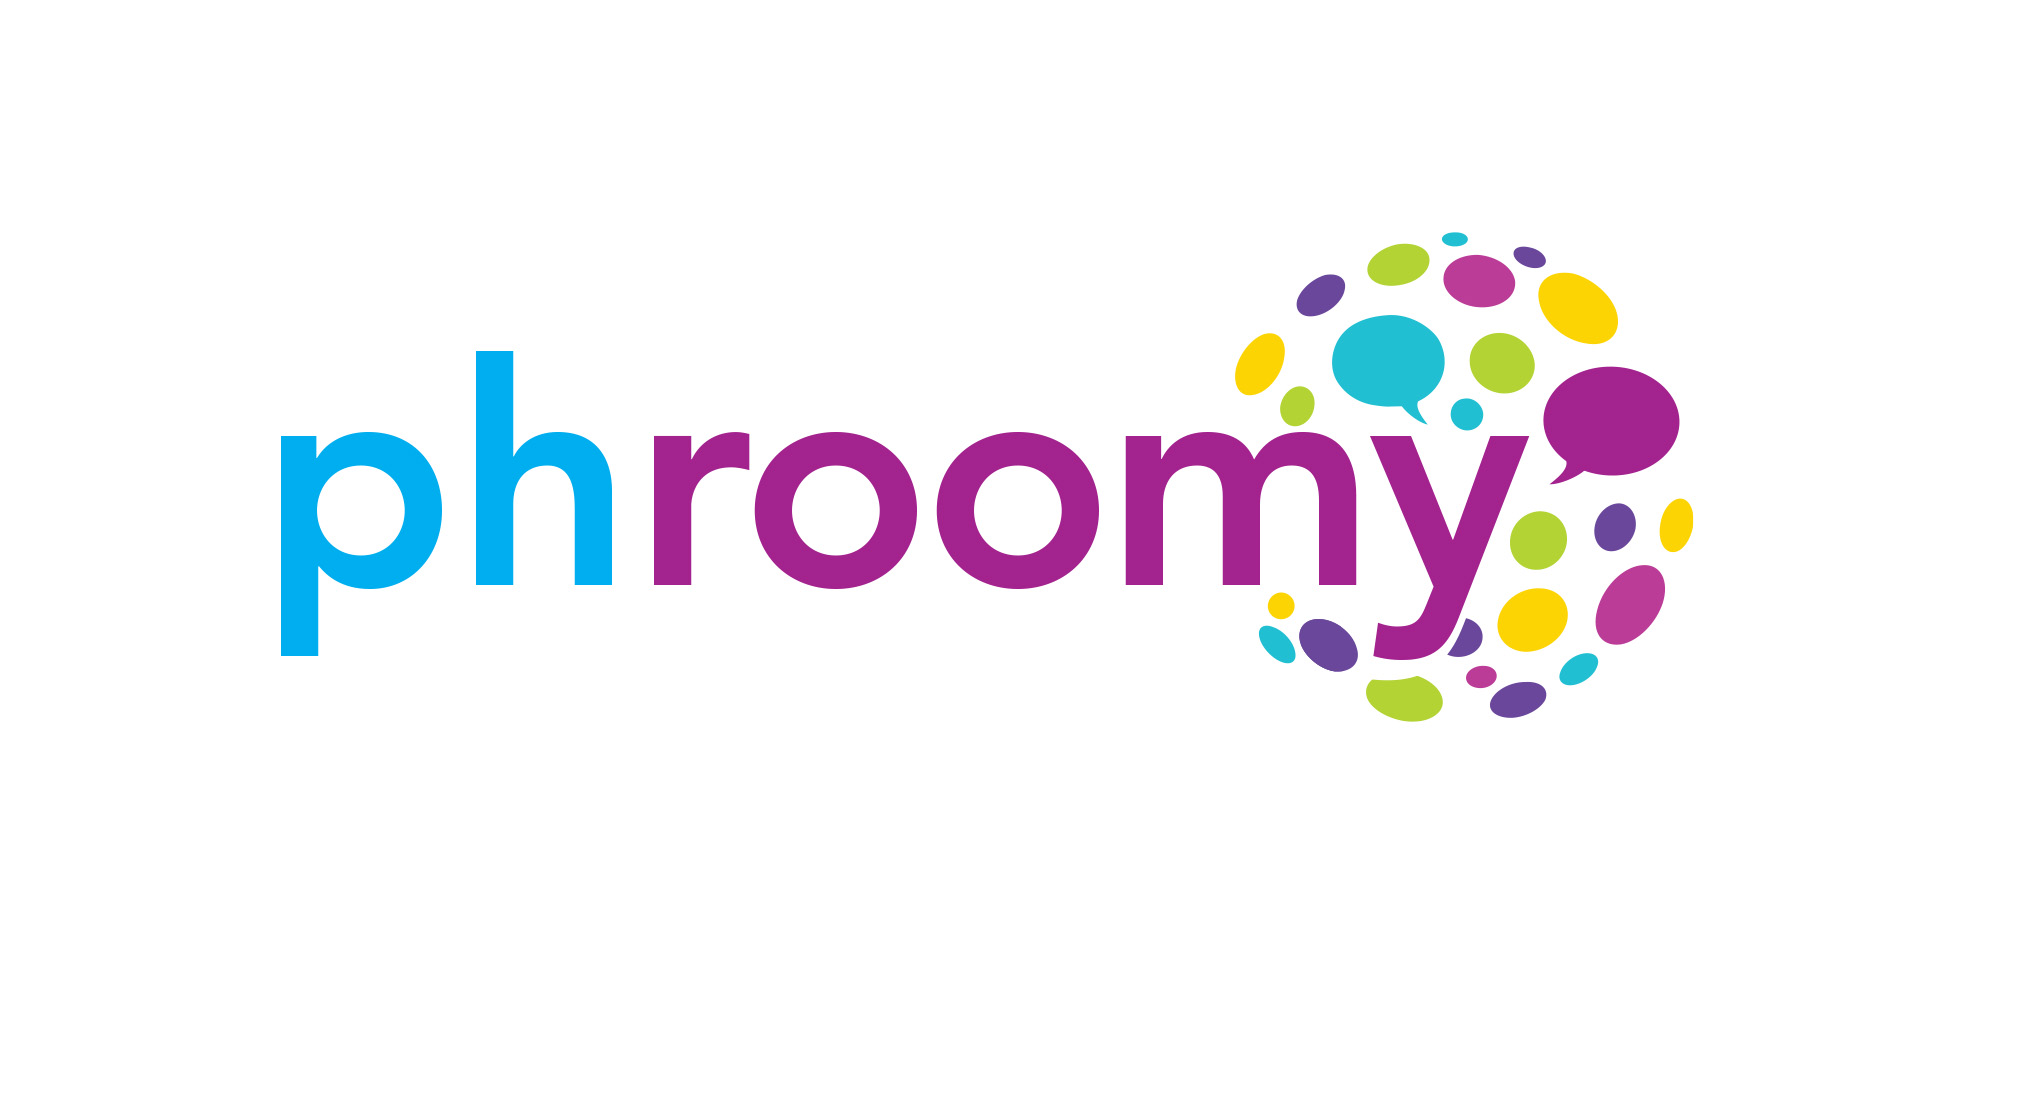 Phroomy ecommerce concept logo design